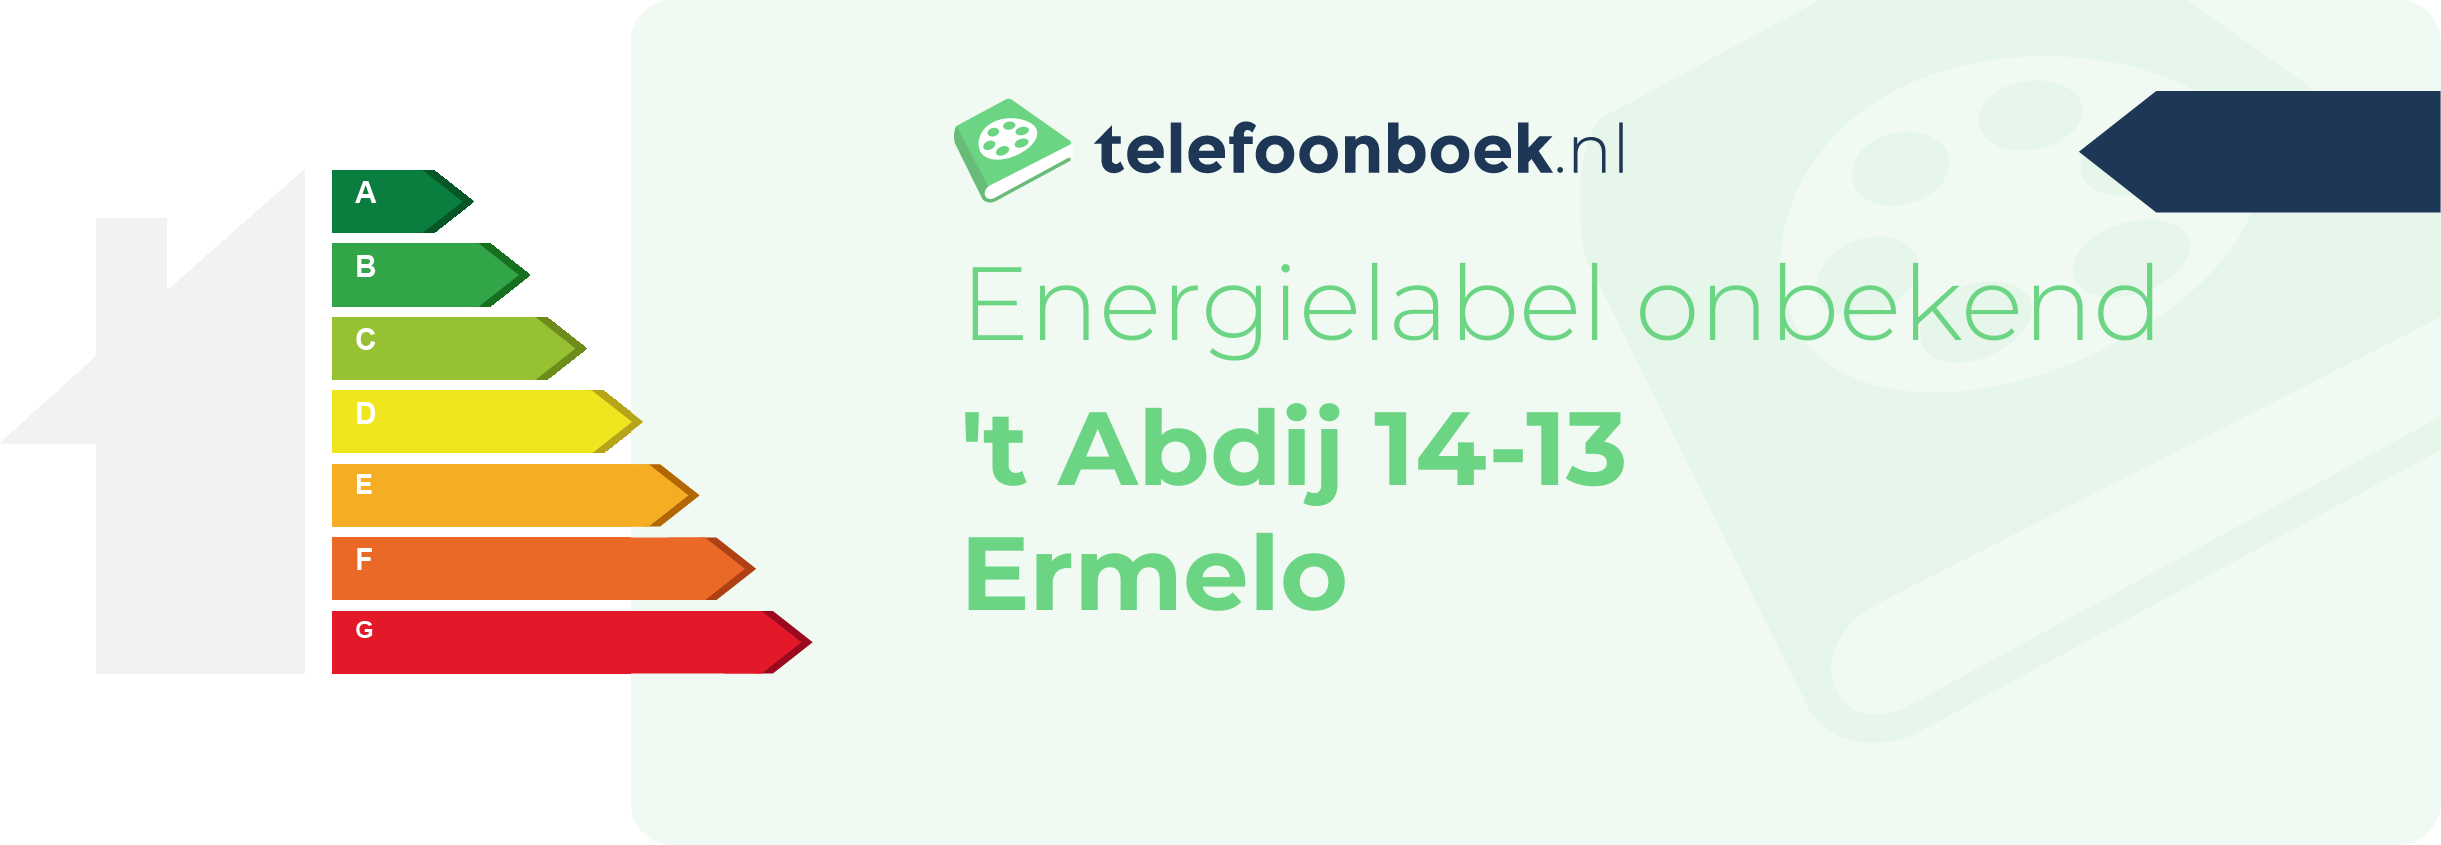 Energielabel 't Abdij 14-13 Ermelo